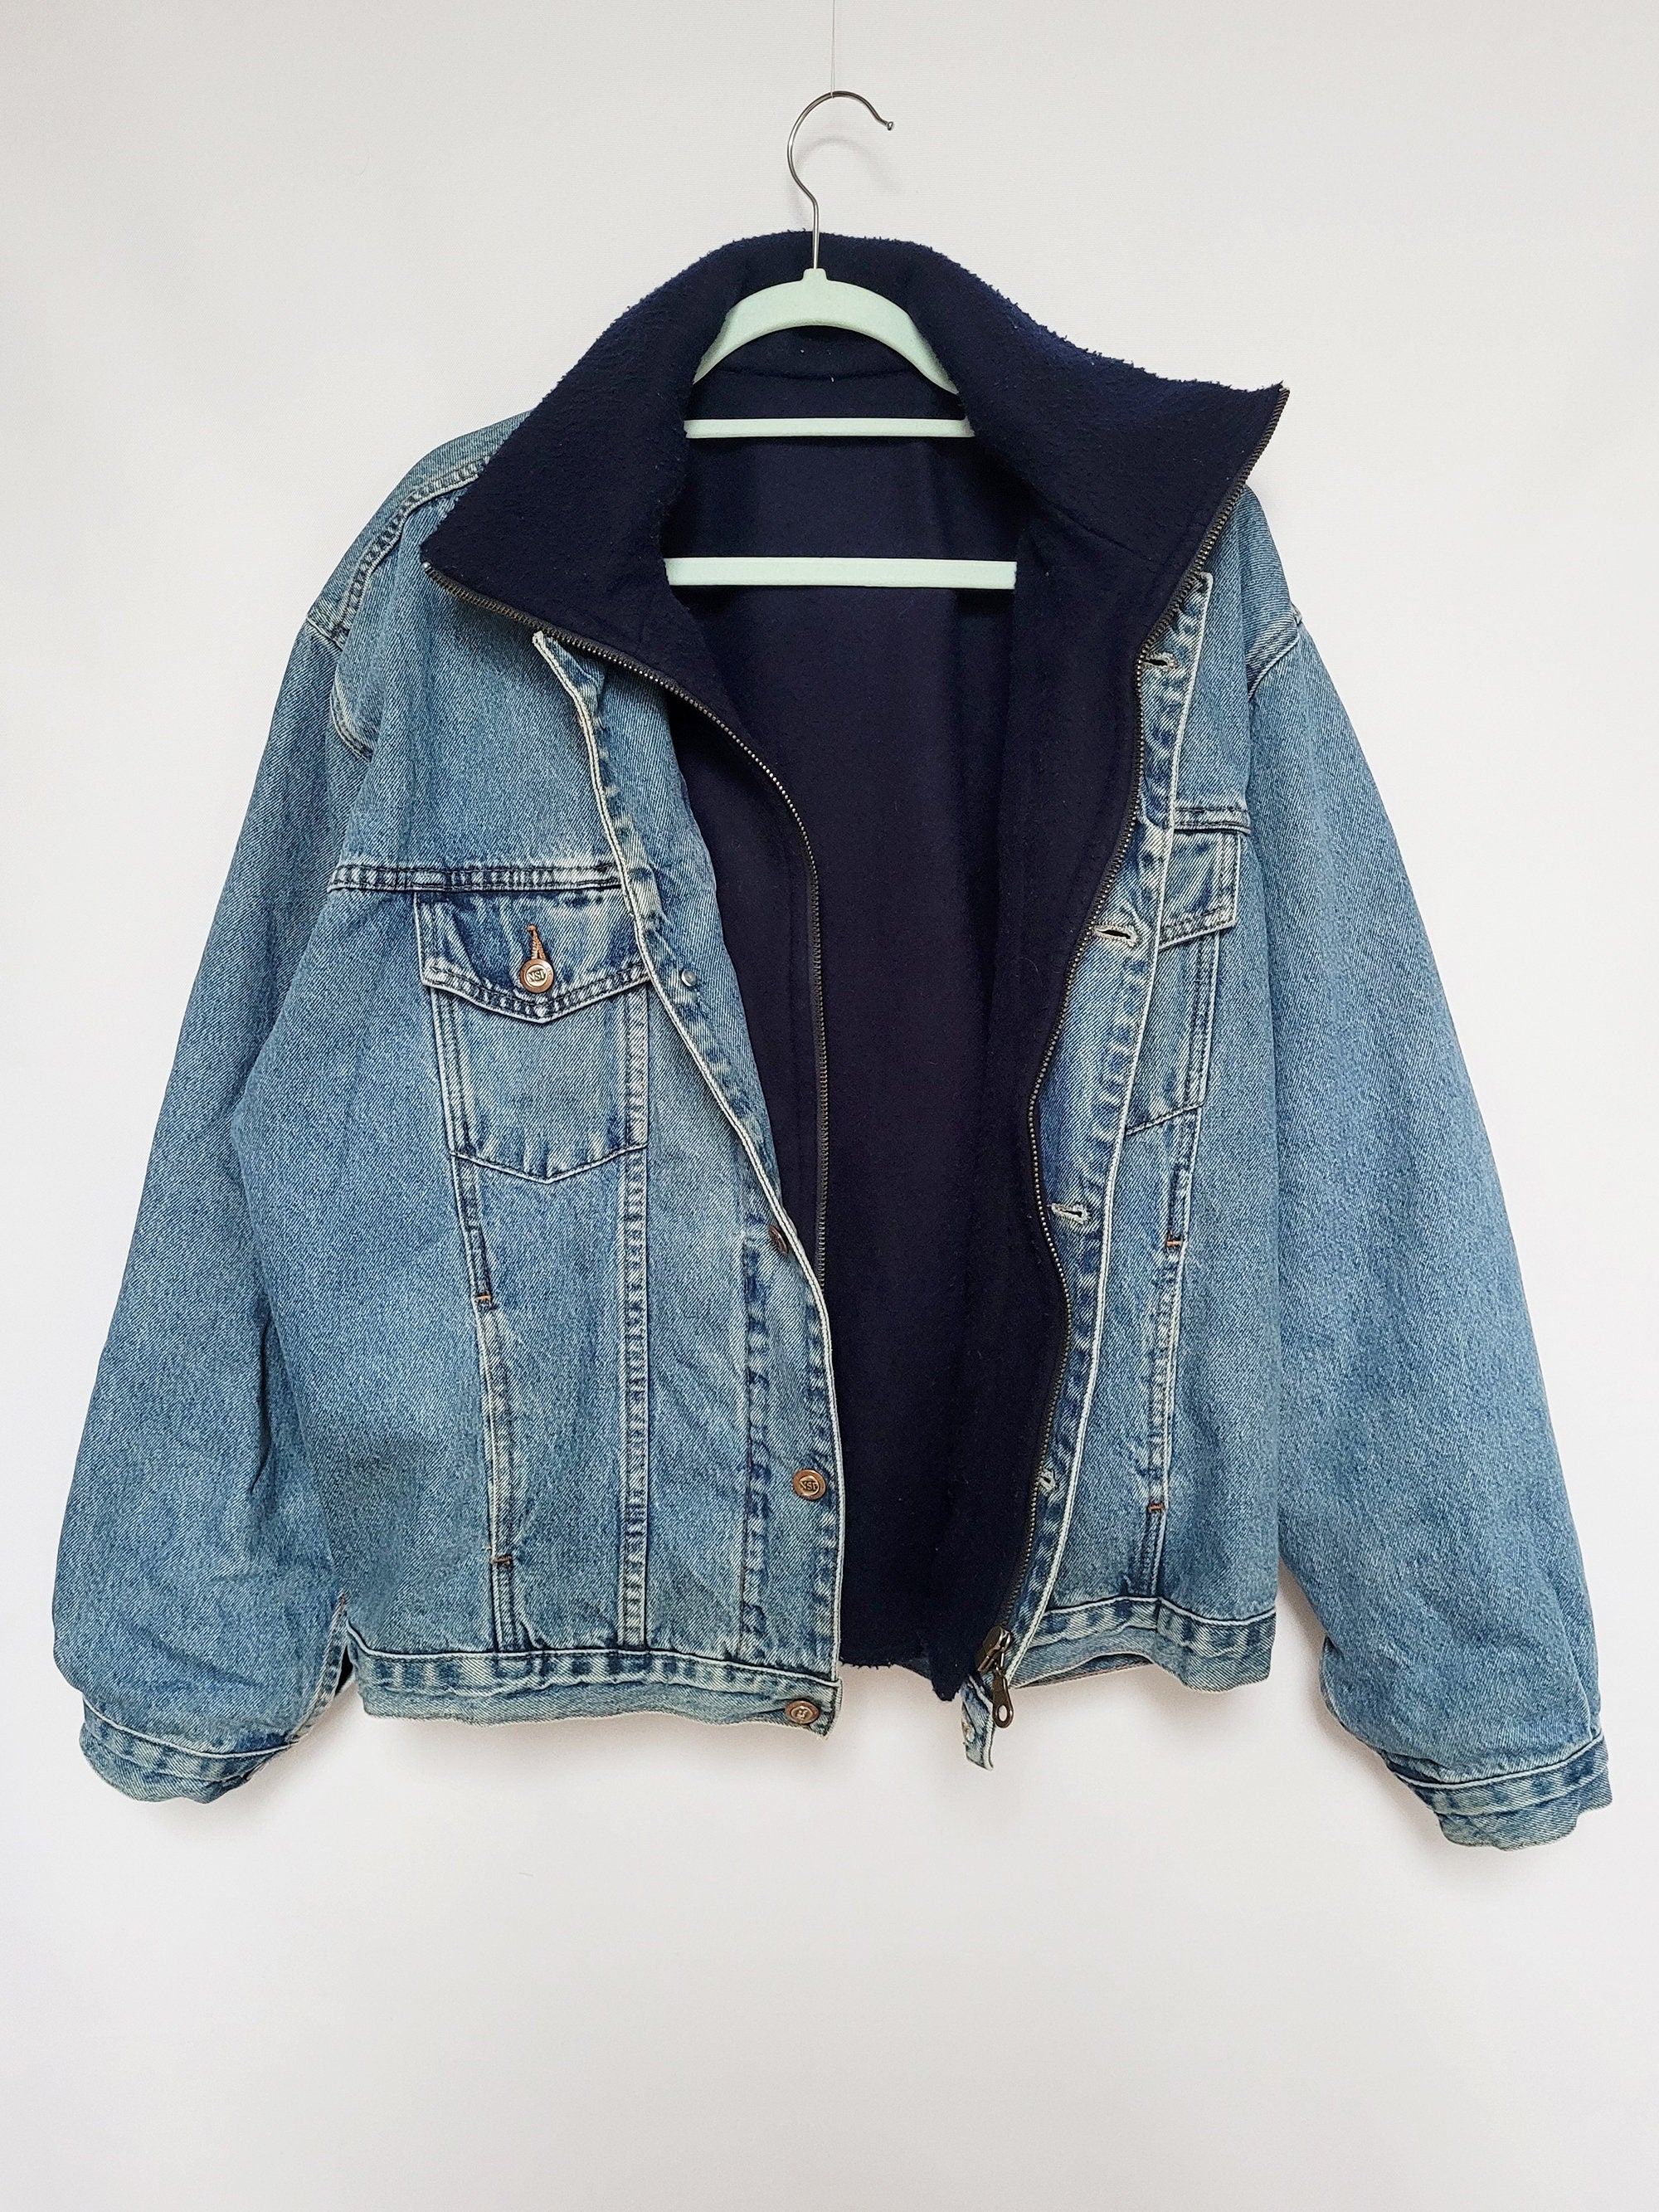 90s blue denim jeans fleece lined menswear oversized jacket